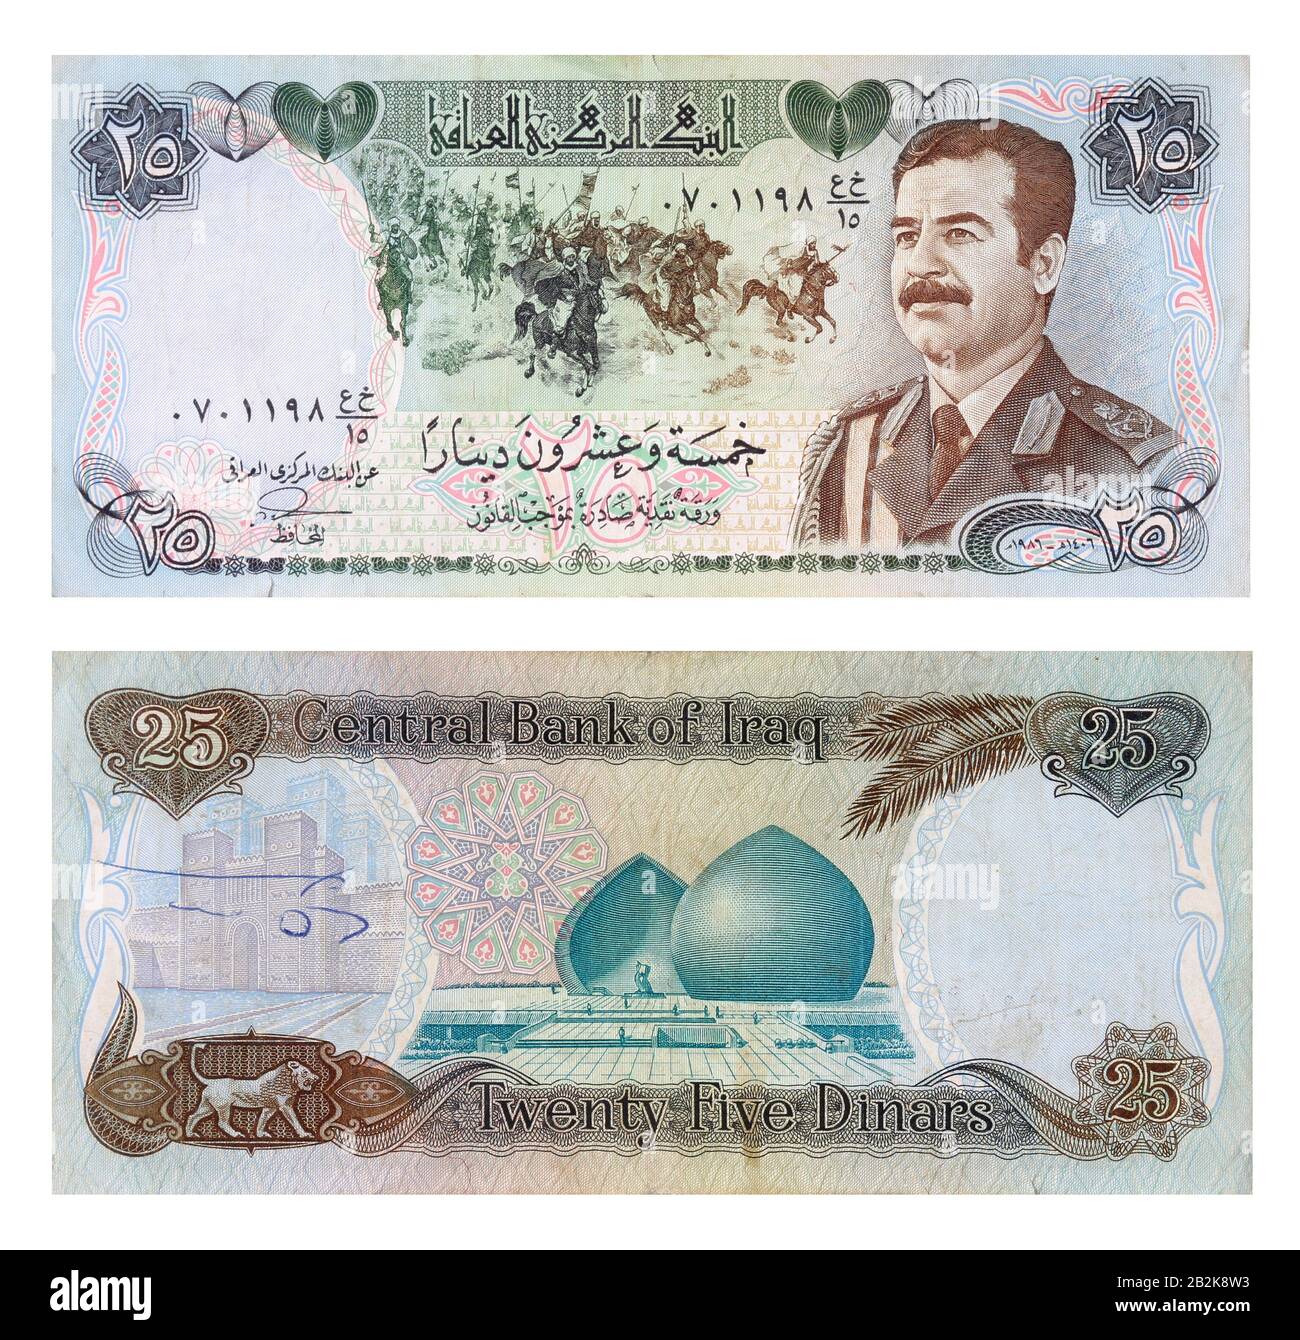 Banconota da 25 dinari iracheni che mostra l'incisione del presidente iracheno Saddam Hussein, la battaglia di Qadisiyah e il monumento di al-Shaheed o il Memoriale dei Martiri Foto Stock